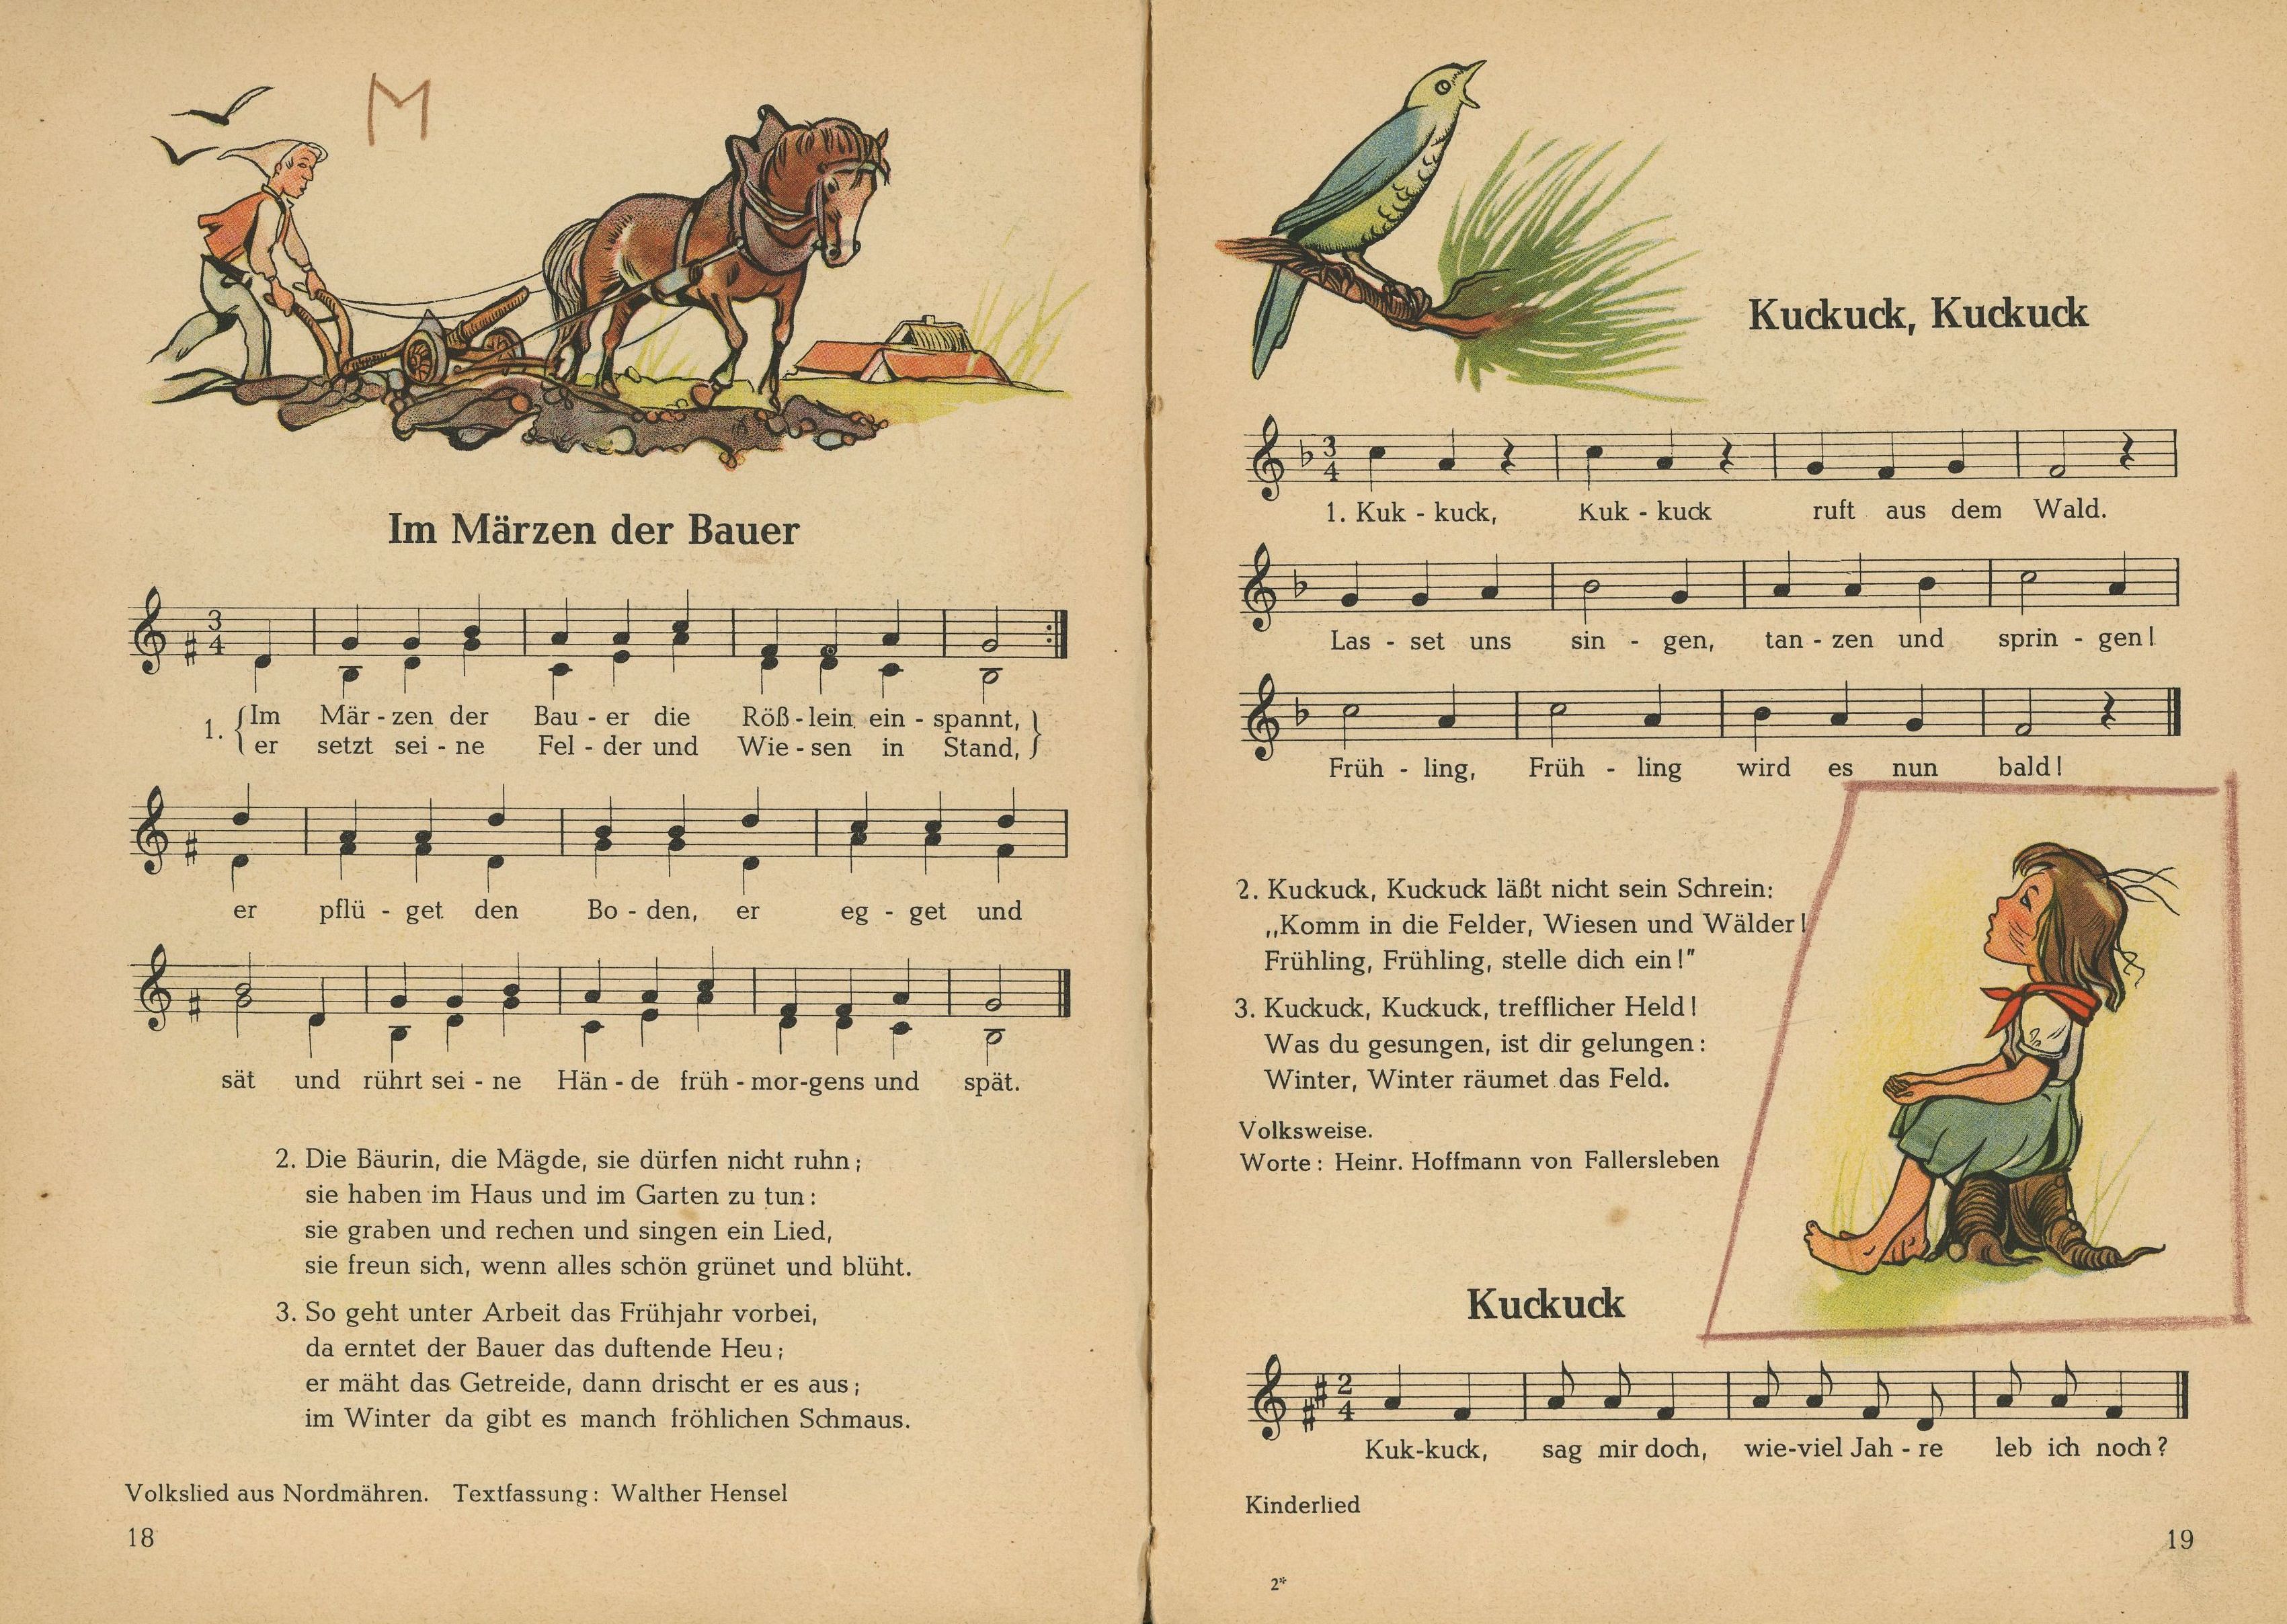 Doppelseite aus dem Liederbuch Sing mit, Bayern 1954